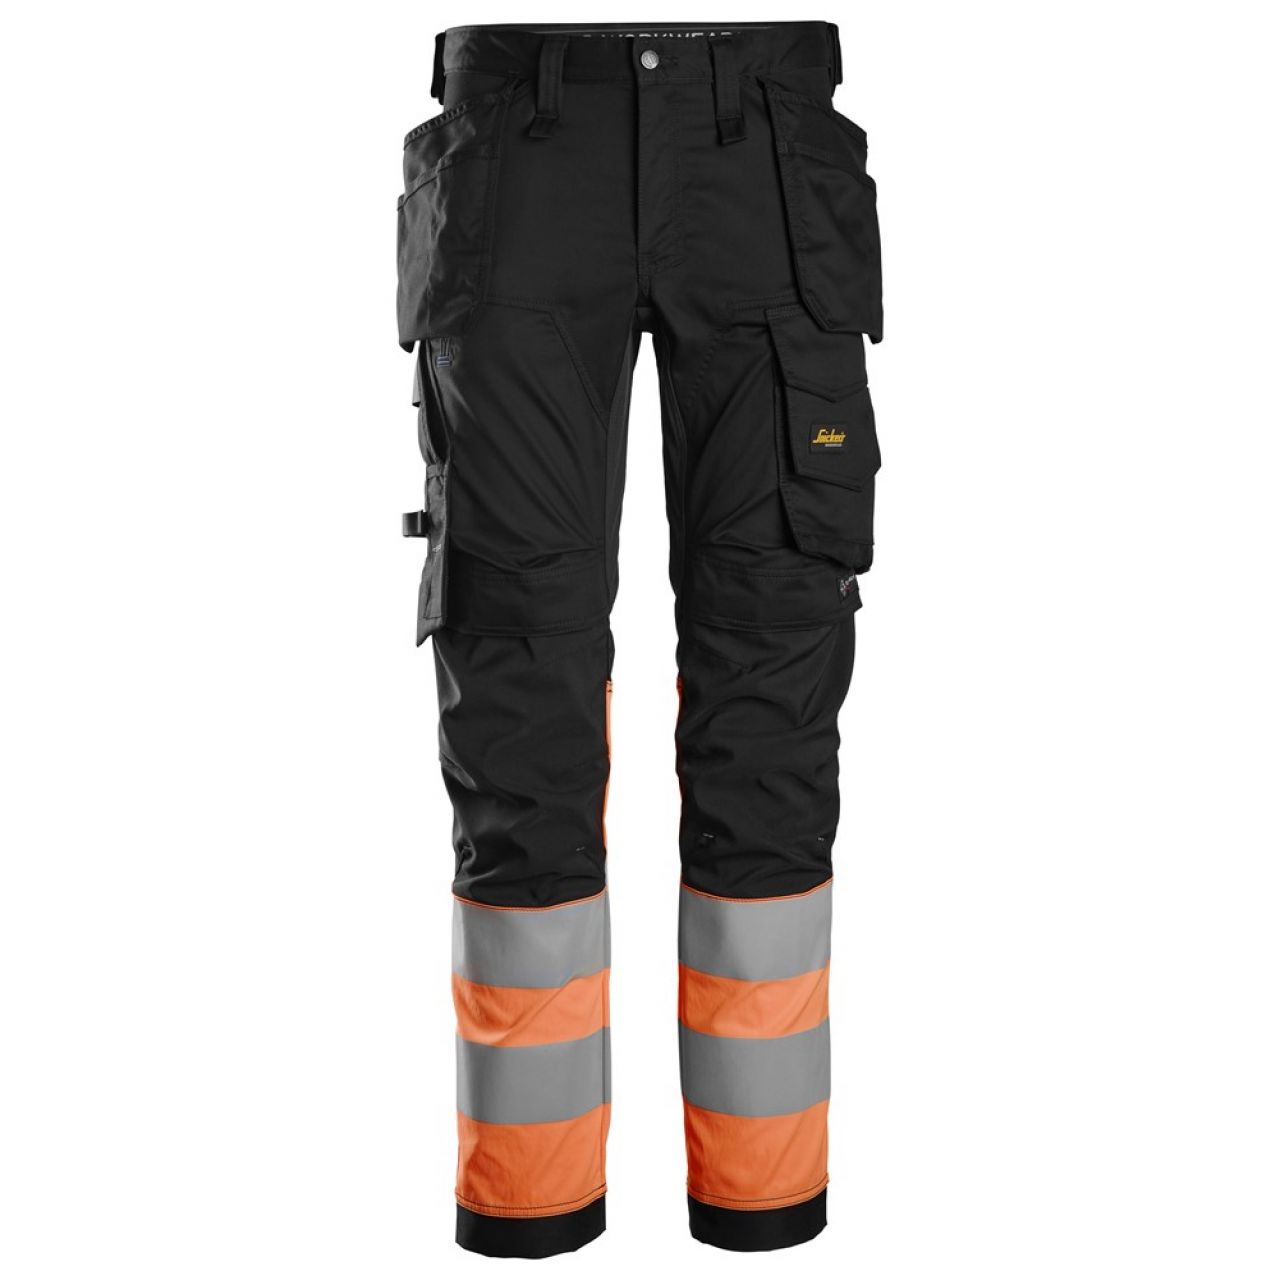 6234 Pantalones largos de trabajo elásticos de alta visibilidad clase 1 con bolsillos flotantes negro-naranja talla 258